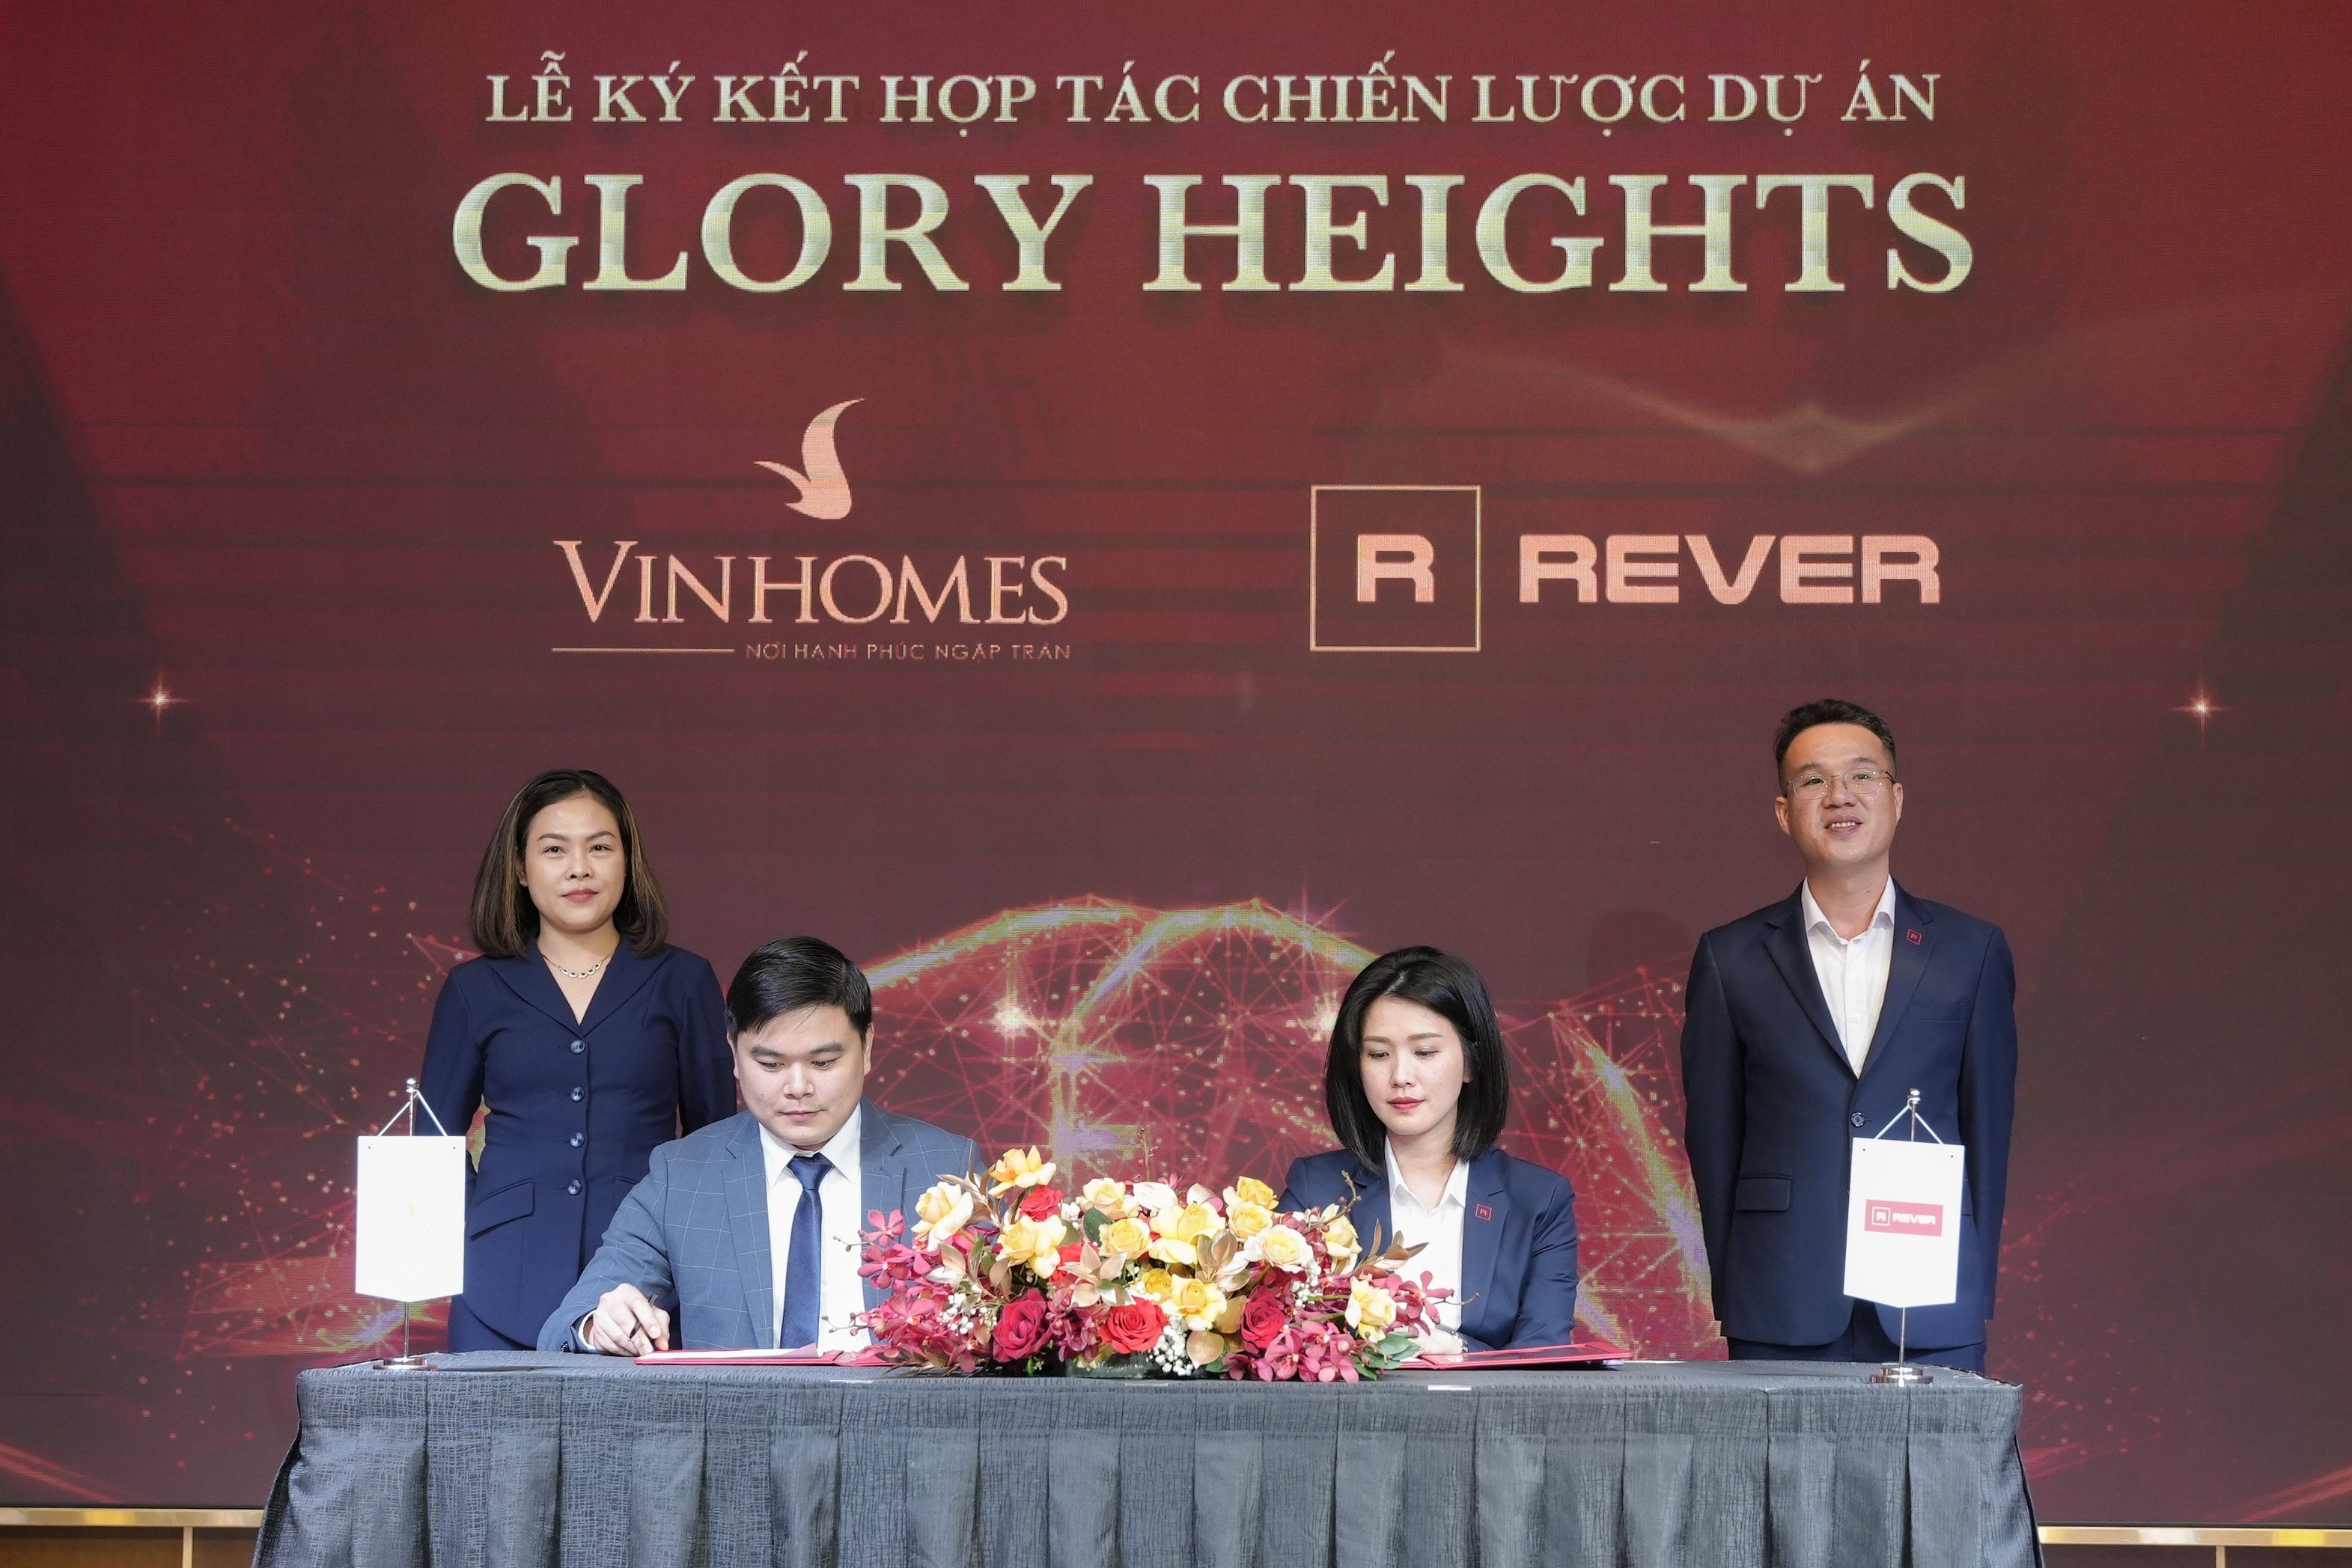 Rever hợp tác chiến lược dự án Glory Heights với Vinhomes, khách hàng hưởng nhiều lợi ích - 2